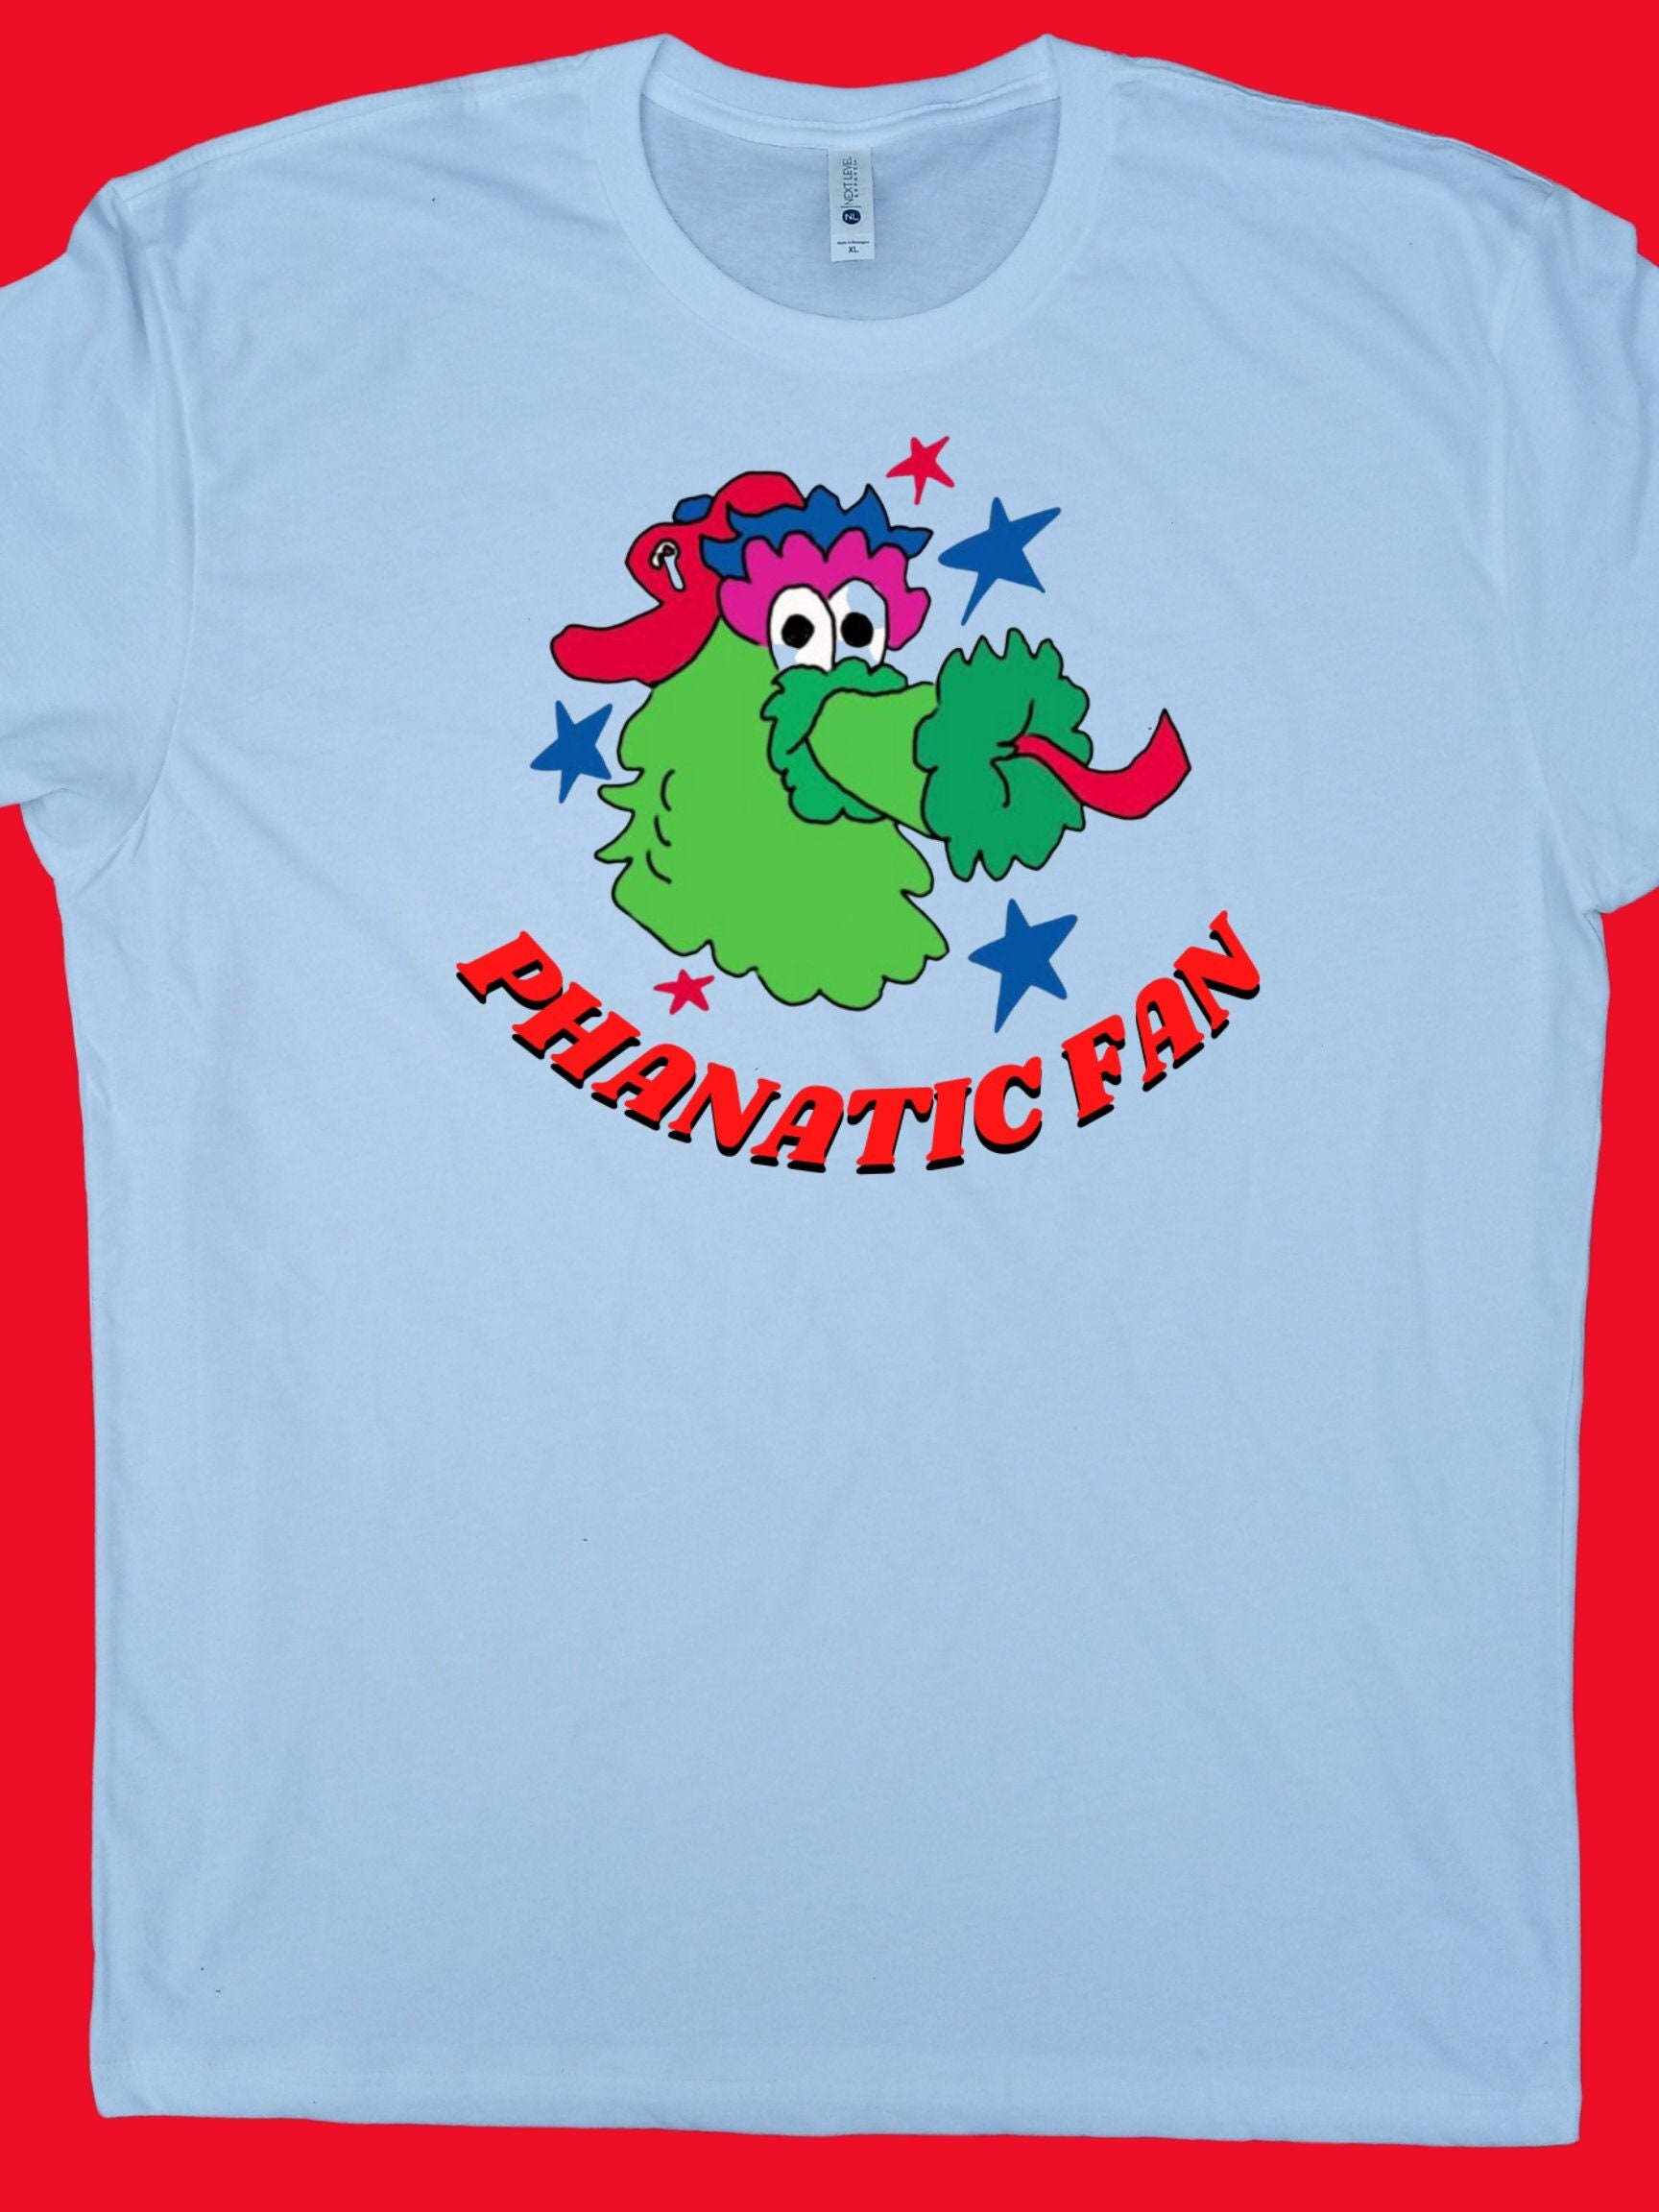 Customized Phillies Phanatic Tee Shirt -  UK